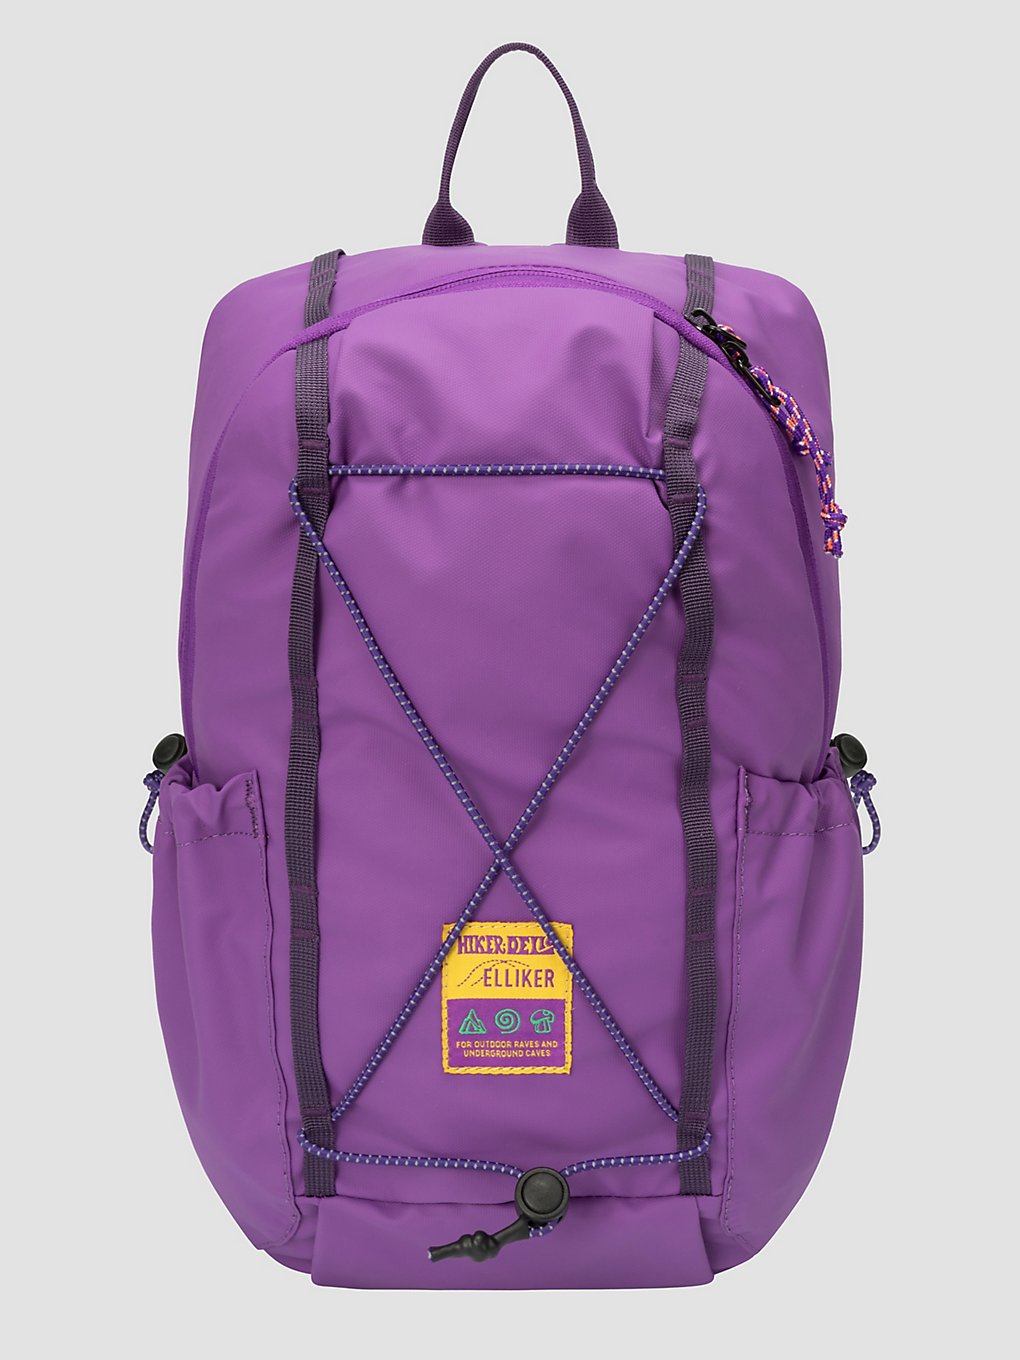 Elliker X Keser Hikerdelic Single Strap Umhängetasche purple kaufen